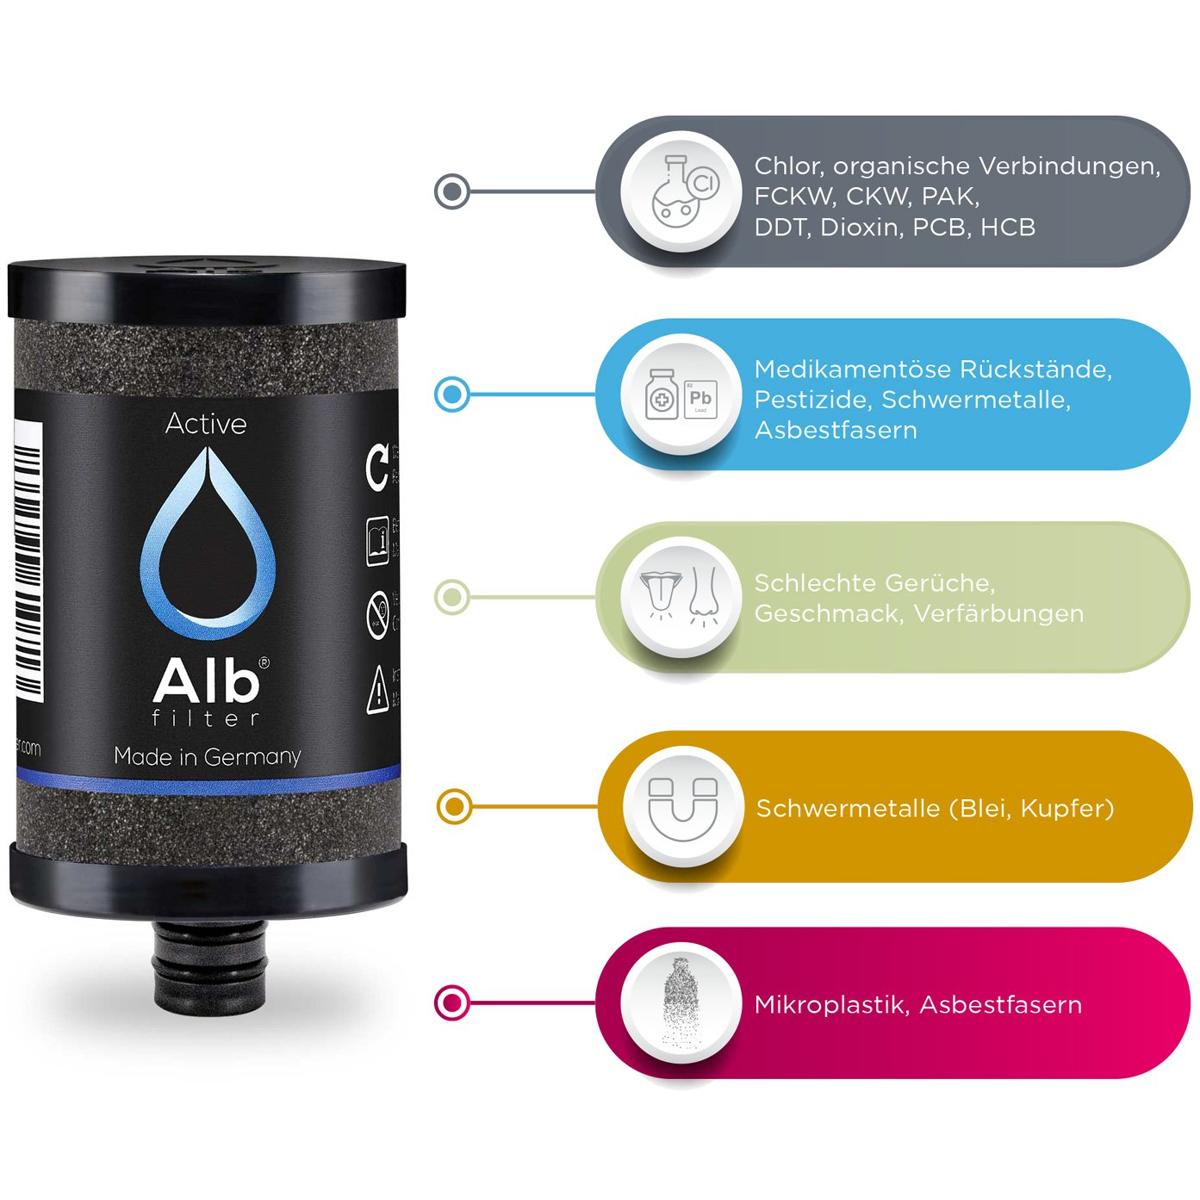 Bestes Trinkwasser auch unterwegs - Wasserfilter von Alb Filter für den  mobilen Einsatz